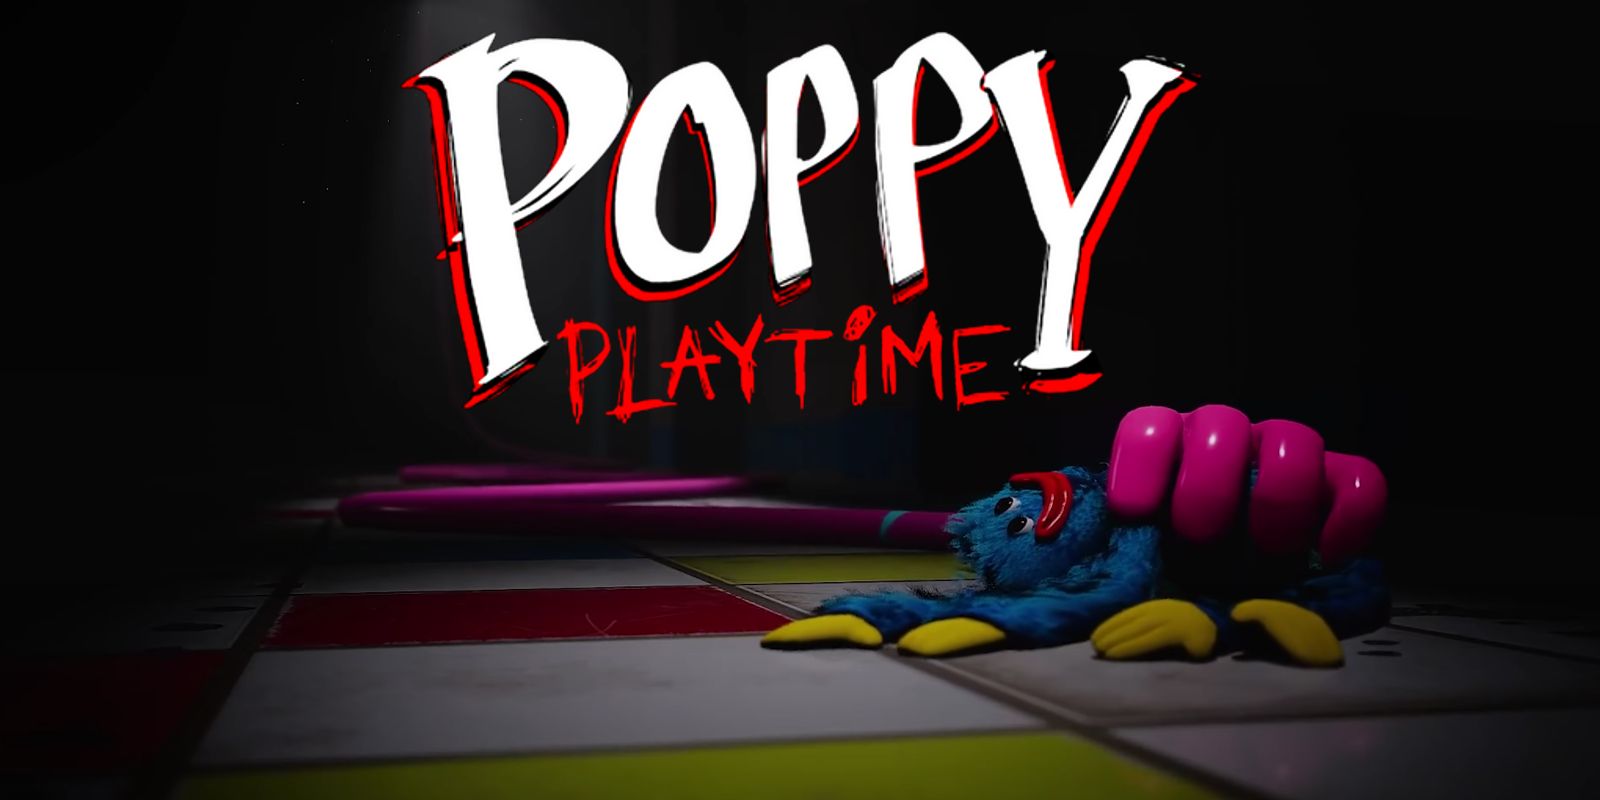 Poppy Playtime Capítulo 2 Final Explicado 💯 » Notícias de filmes